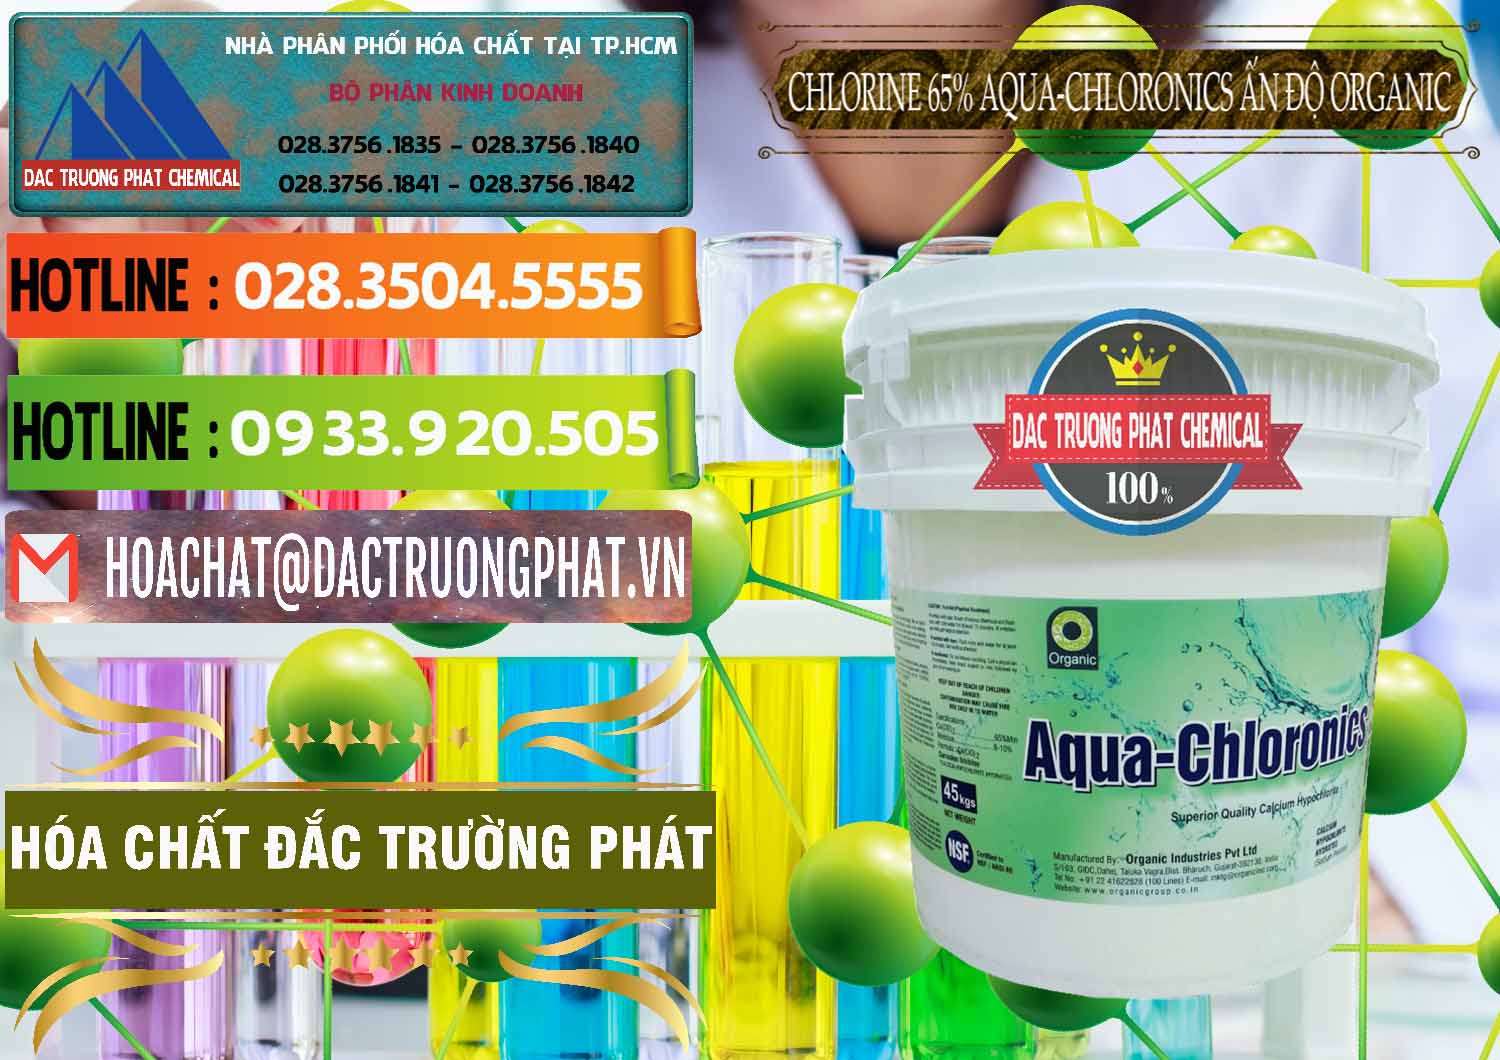 Đơn vị kinh doanh & bán Chlorine – Clorin 65% Aqua-Chloronics Ấn Độ Organic India - 0210 - Nơi bán và cung cấp hóa chất tại TP.HCM - cungcaphoachat.com.vn